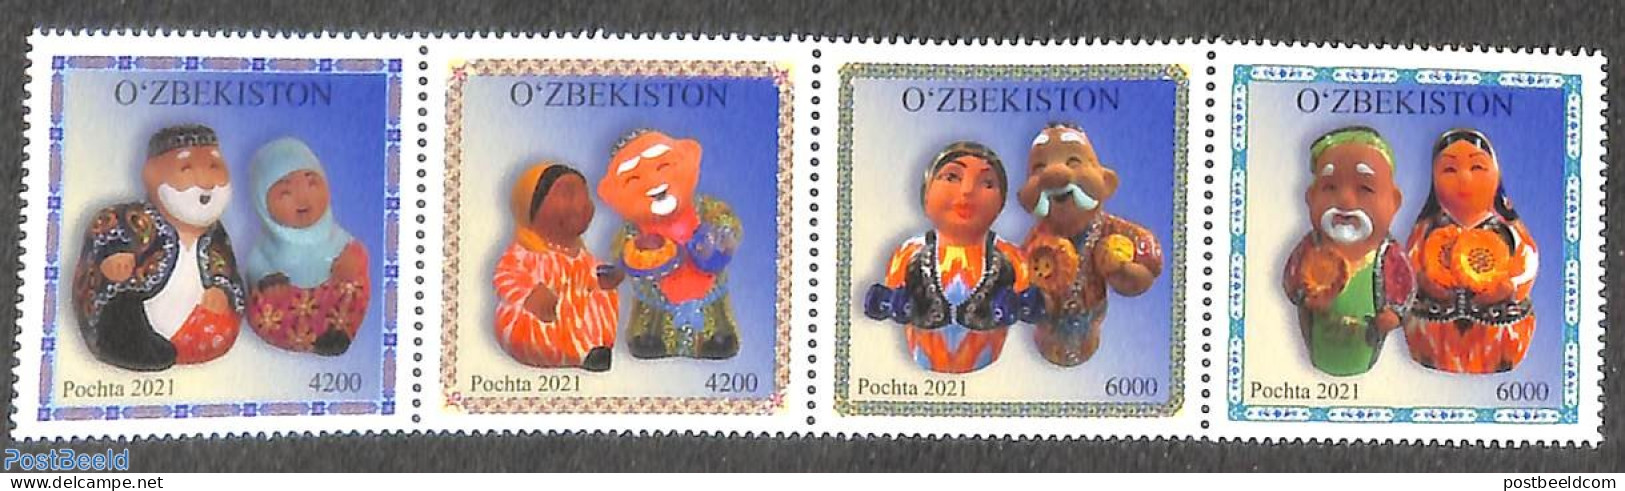 Uzbekistan 2022 Tradional Clay Puppets 4v [:::], Mint NH - Ouzbékistan